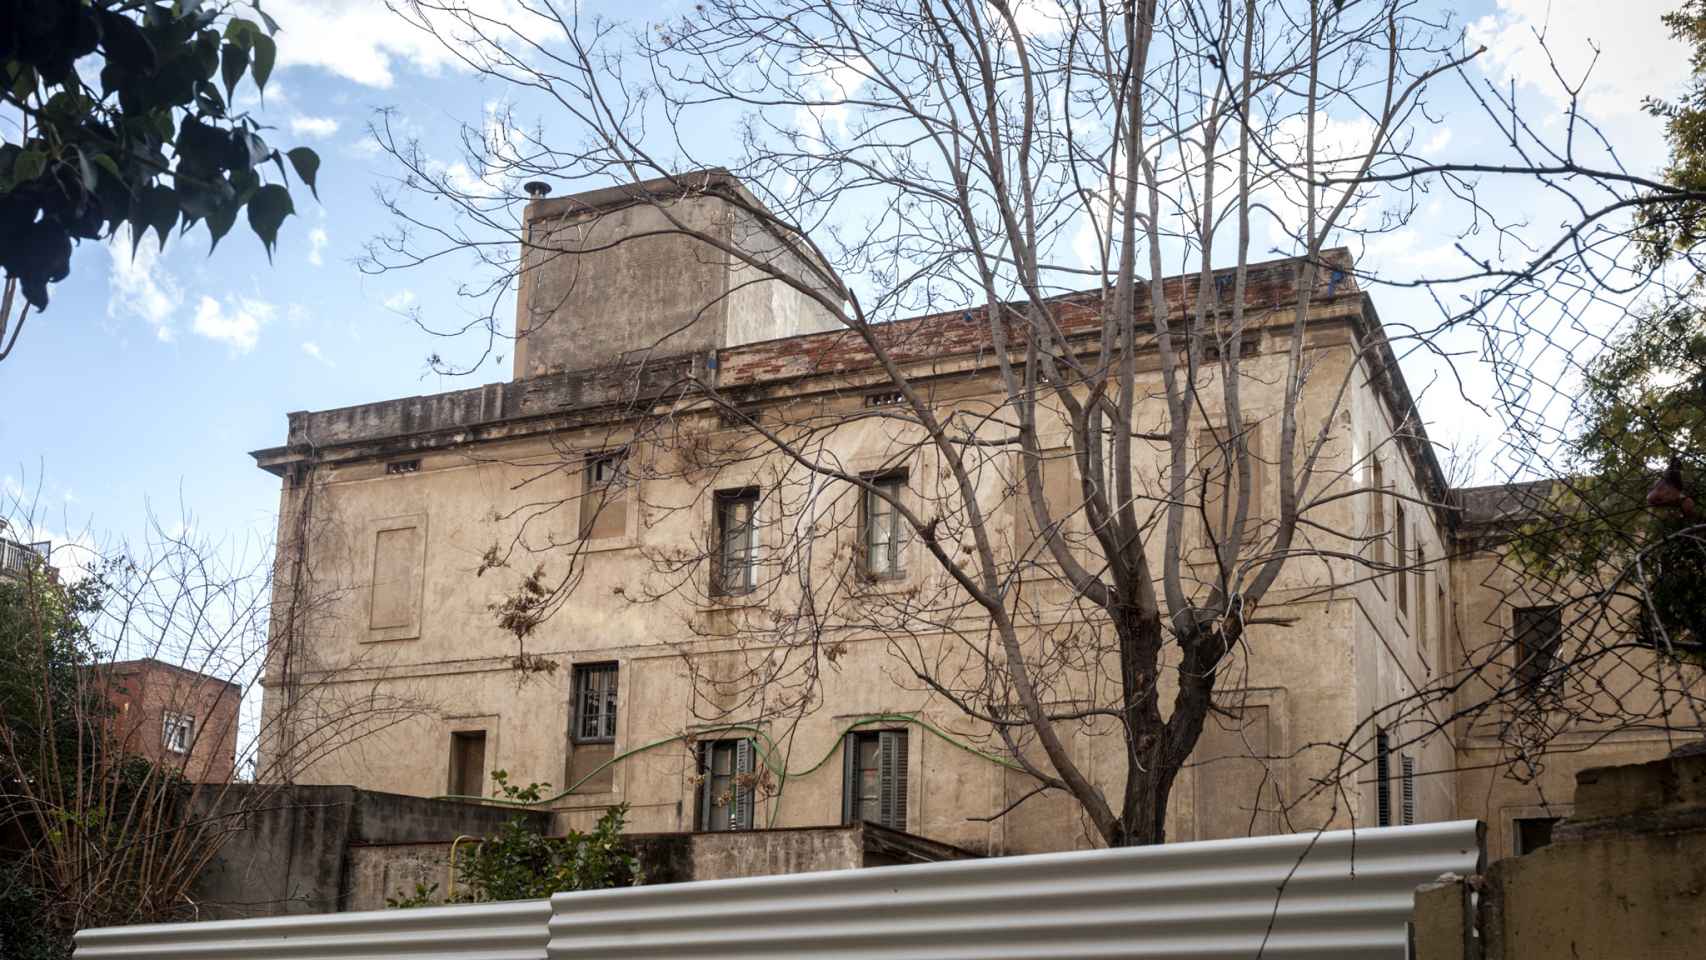 La finca figura en el catálogo de patrimonio arquitectónico de Barcelona